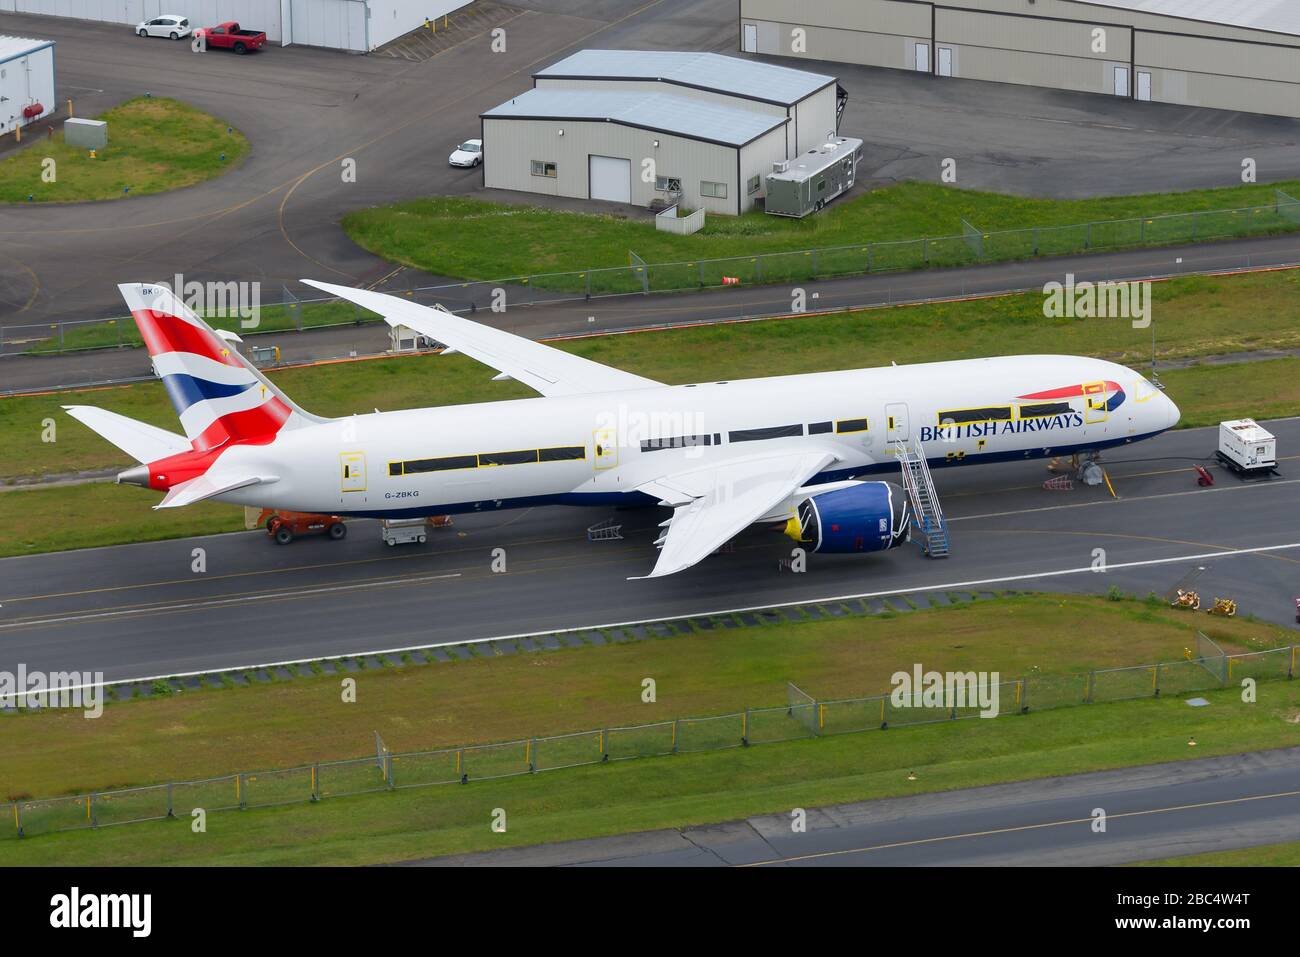 British Airways Boeing 787 Dreamliner gelagert in Paine Field Boeing Factory. Passagiere Flugzeuge in Lagerbedingungen. Verspätete Lieferung. Stockfoto